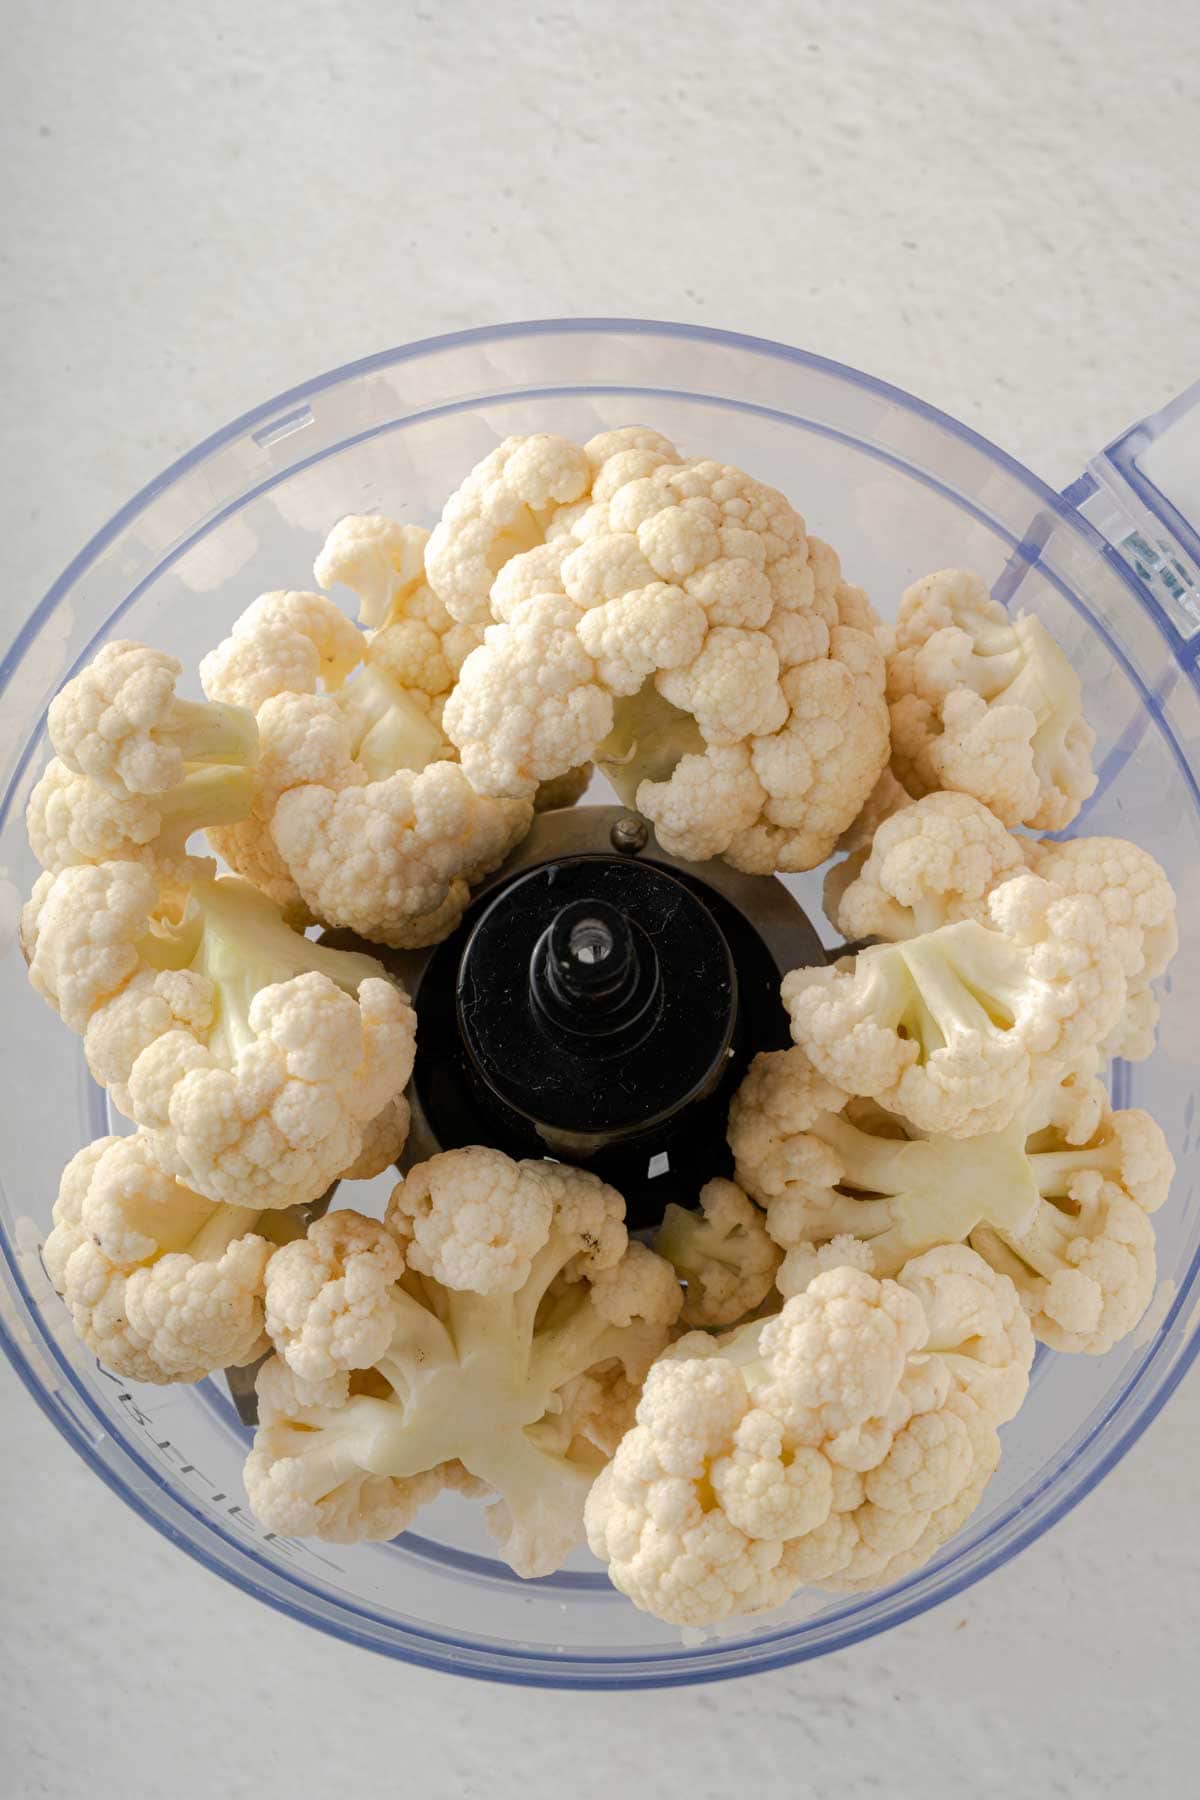 Cauliflower in a food processor.